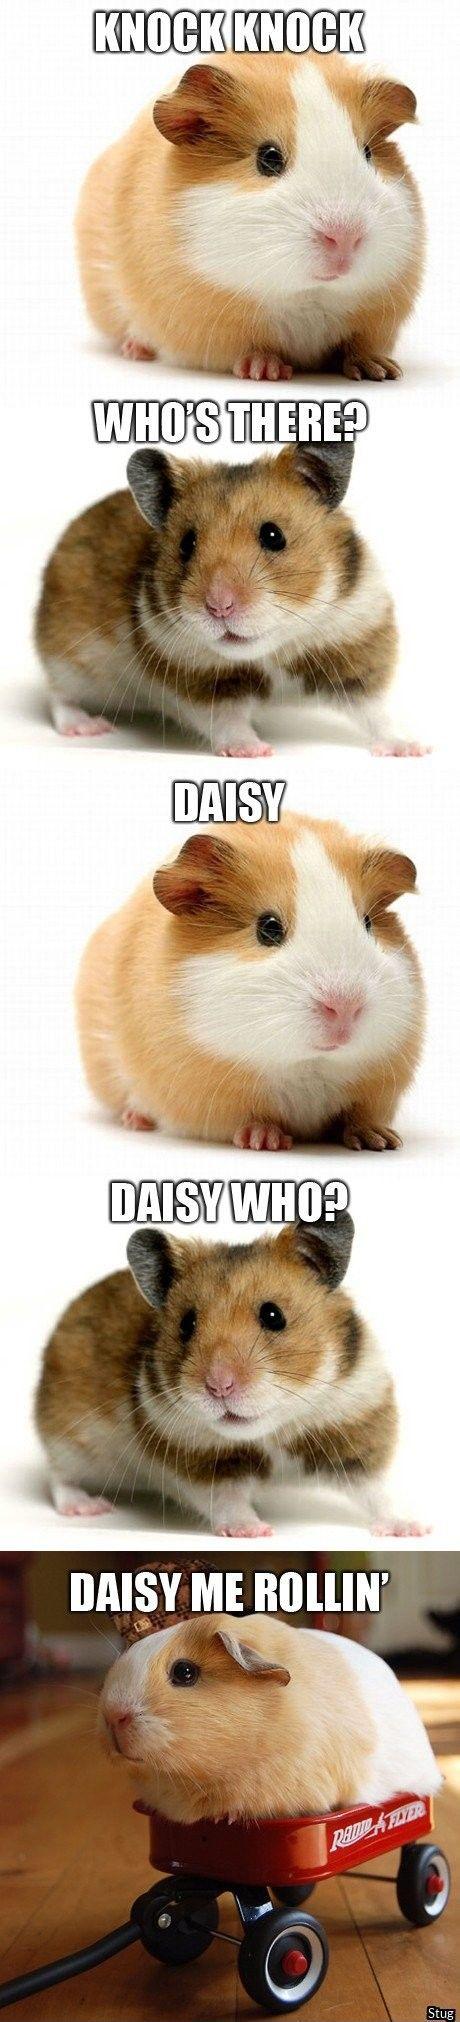 Daisy who?